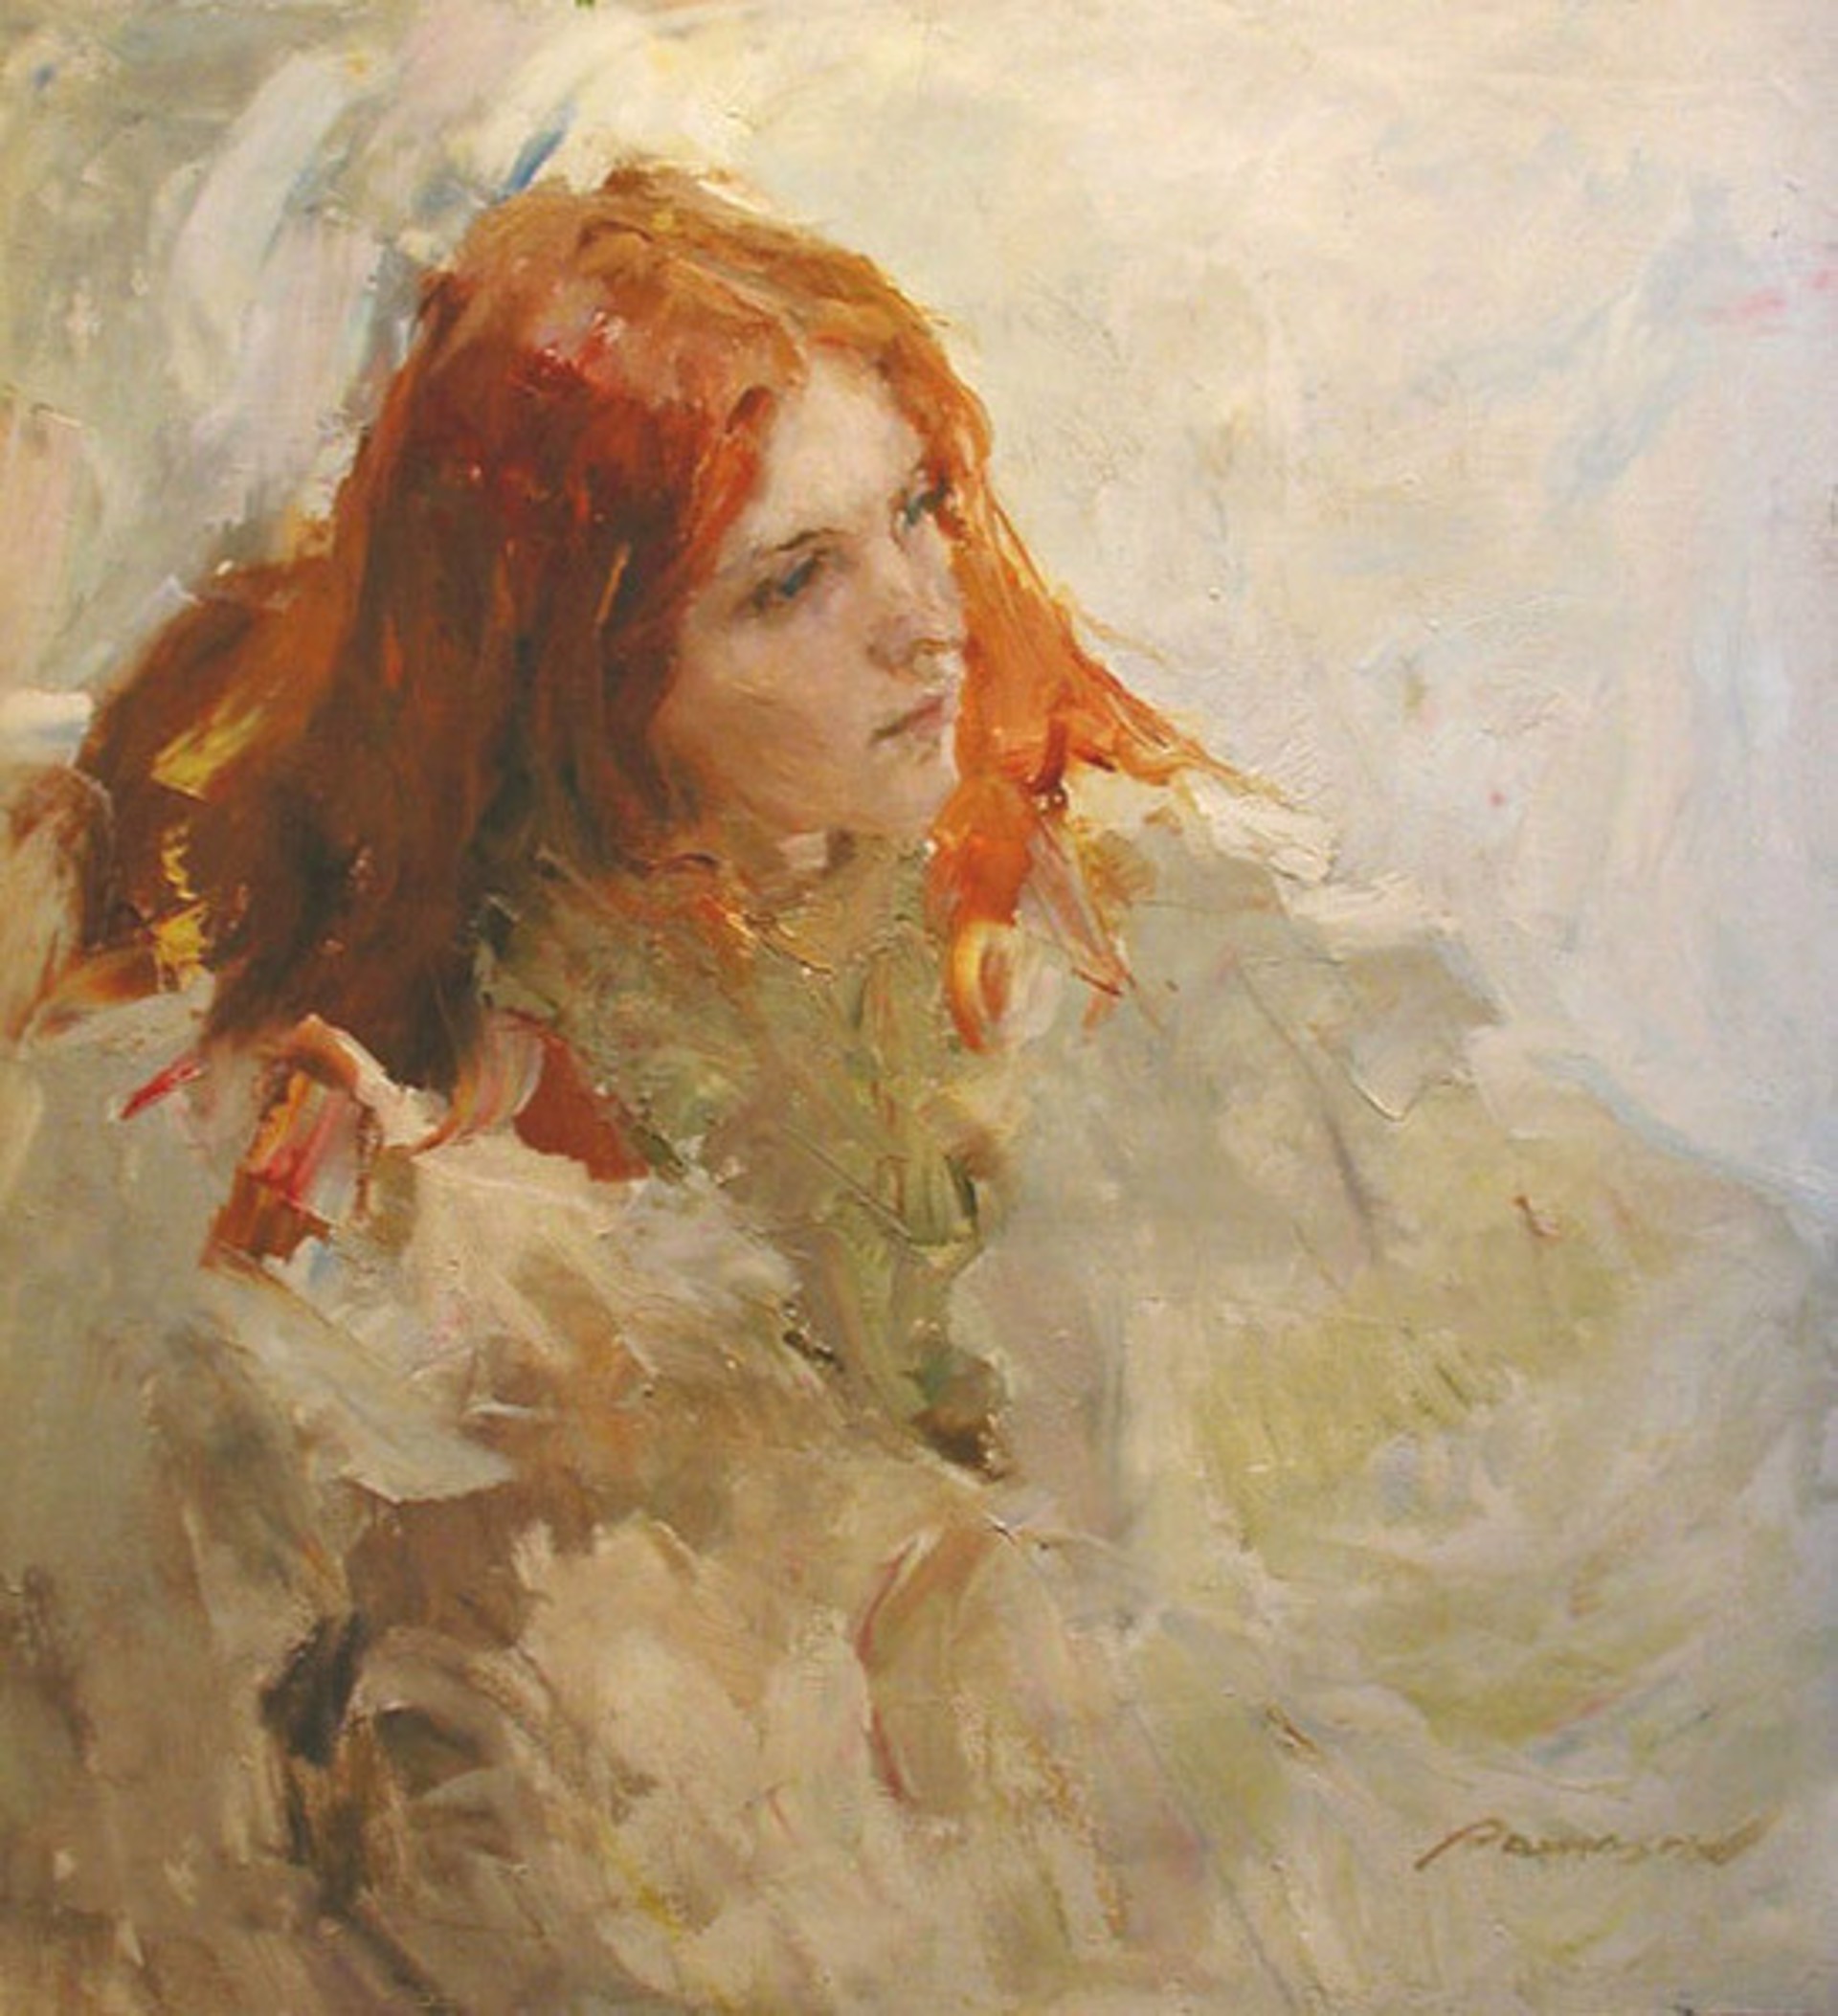 Olya in White by Renat Ramazanov